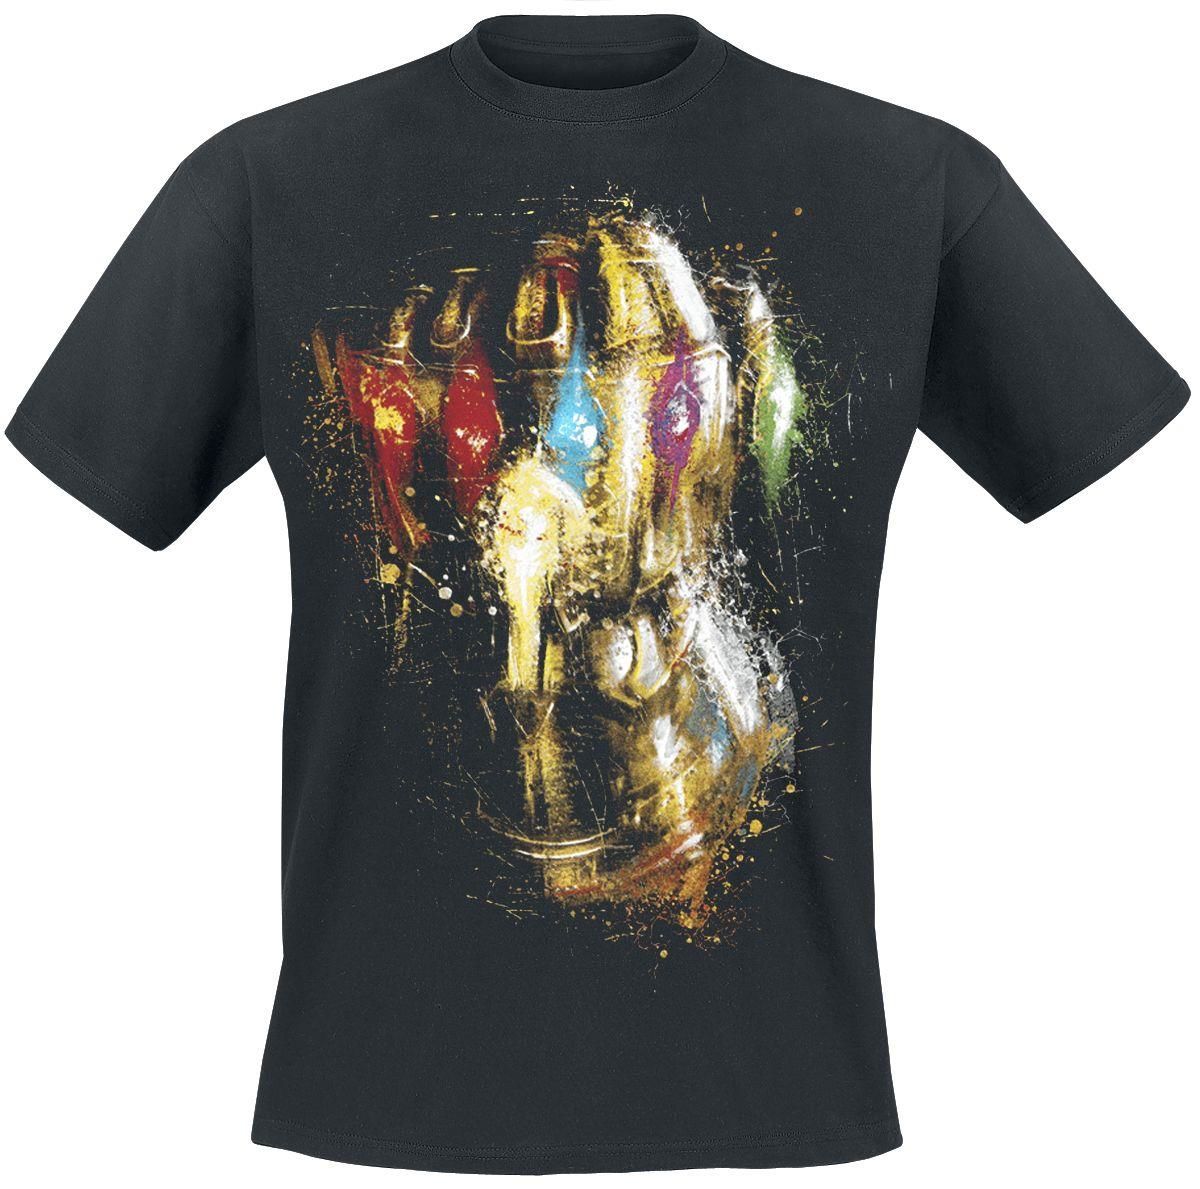 Marvel - Avengers Endgame Thanos Destroy Gantlet Black T-Shirt X